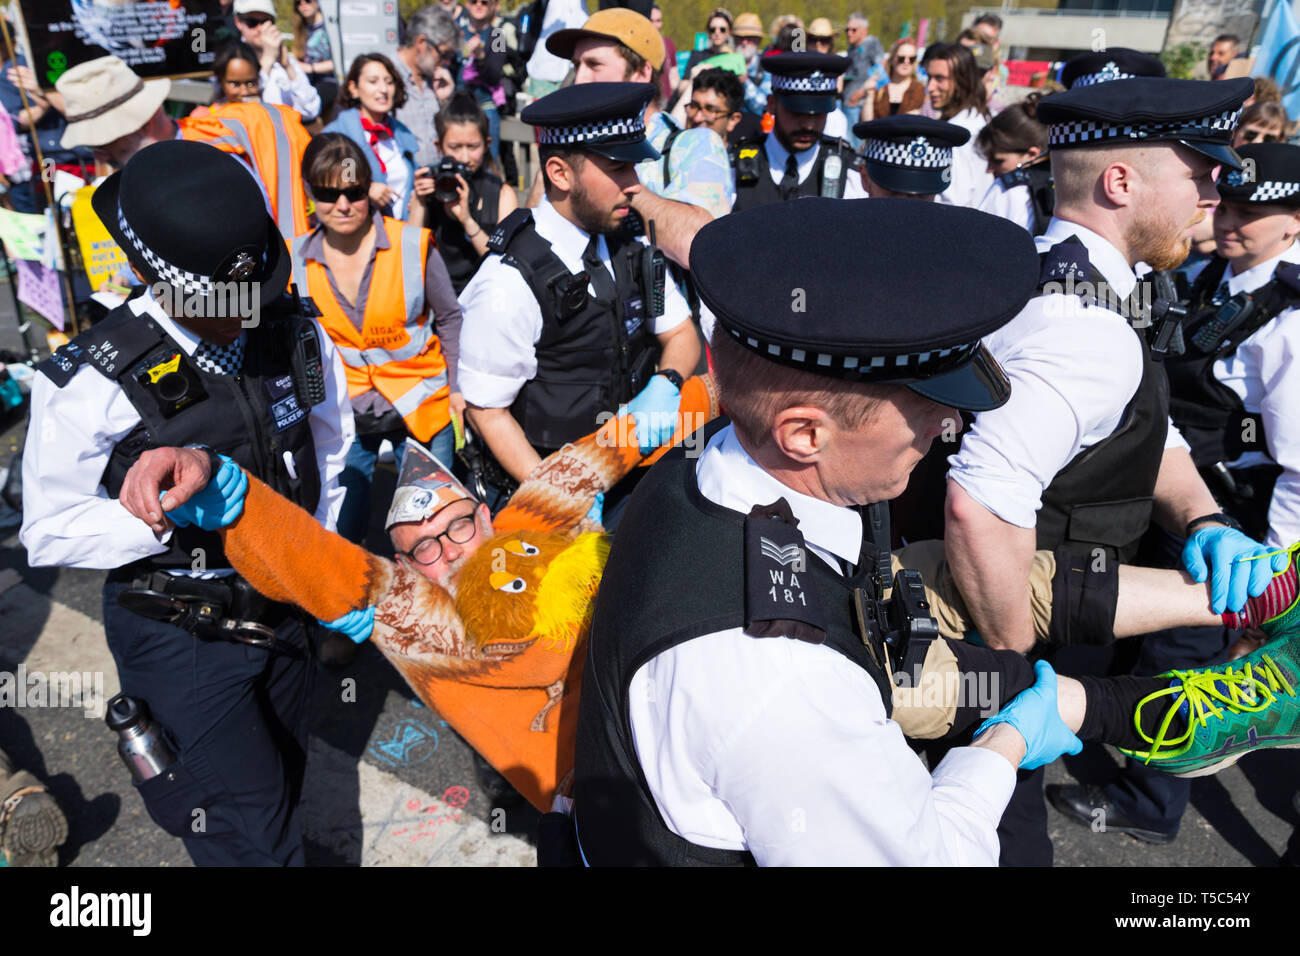 Arrestation d'un manifestant de la police au camp de rébellion d'extinction sur Waterloo Bridge, Londres Banque D'Images